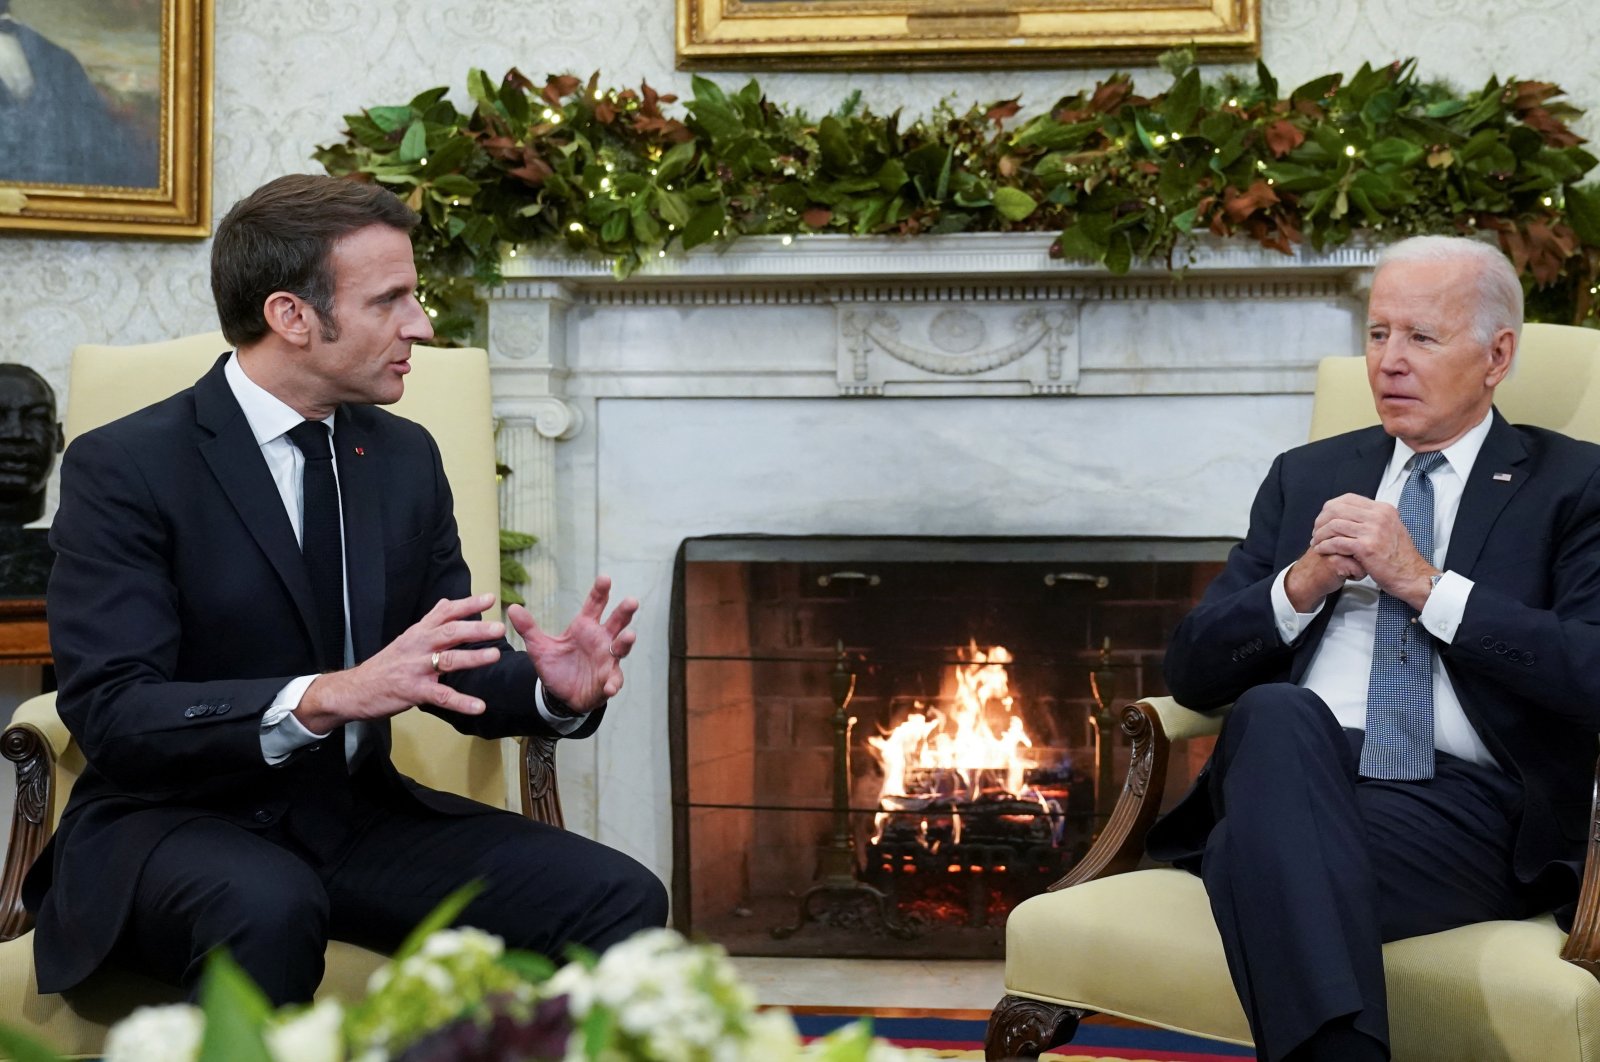 AS, Prancis menjanjikan aliansi ‘tak tergoyahkan’ saat Biden menjamu Macron